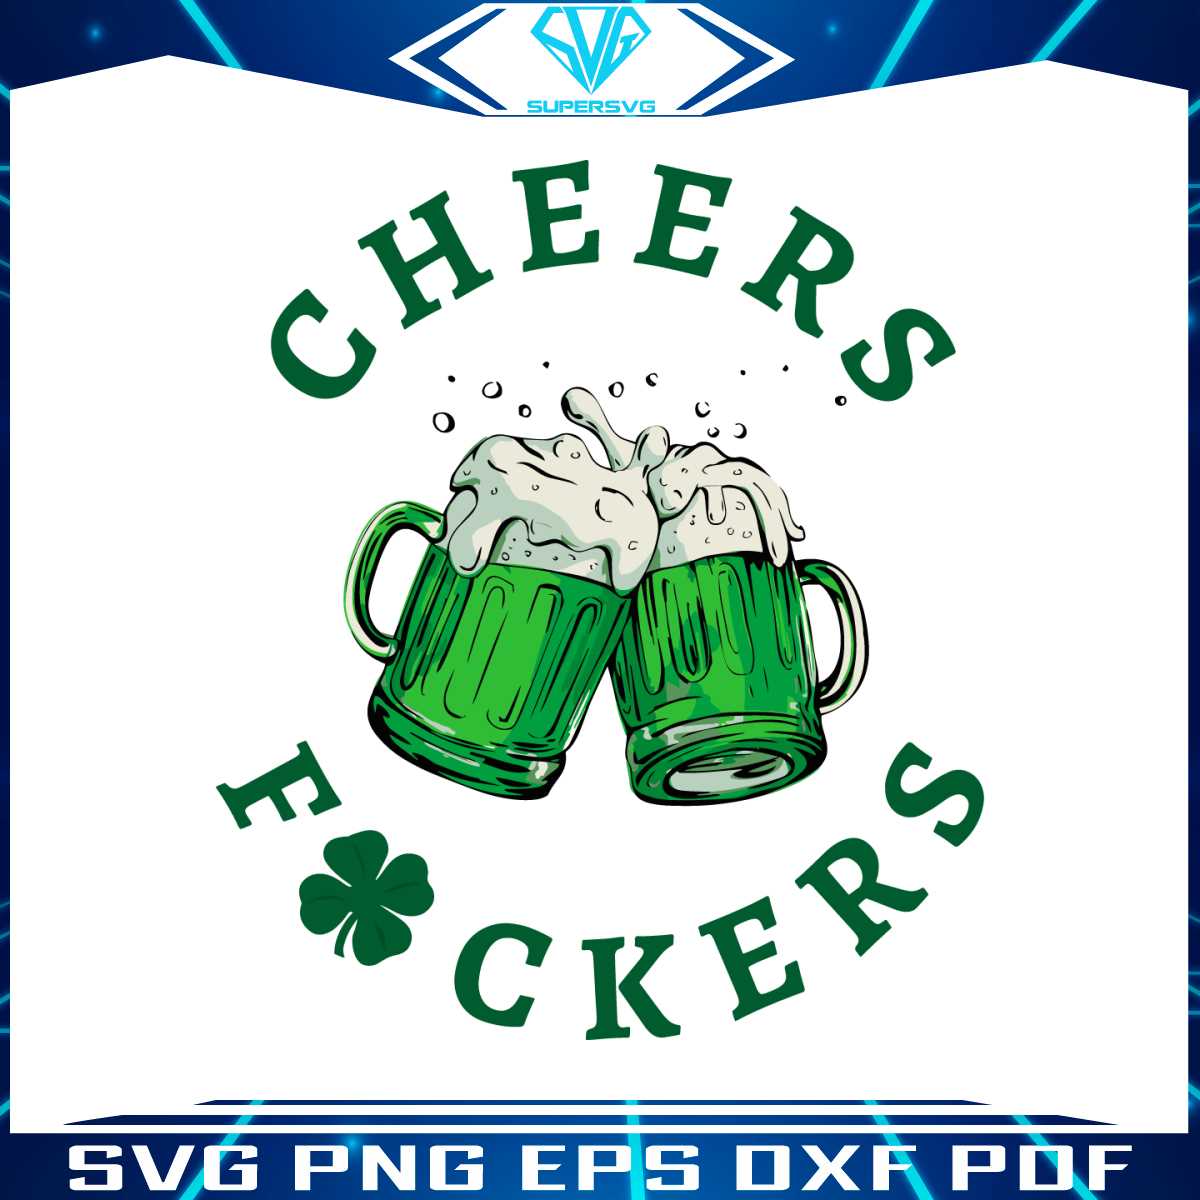 cheers-fuckers-shamrock-beer-svg